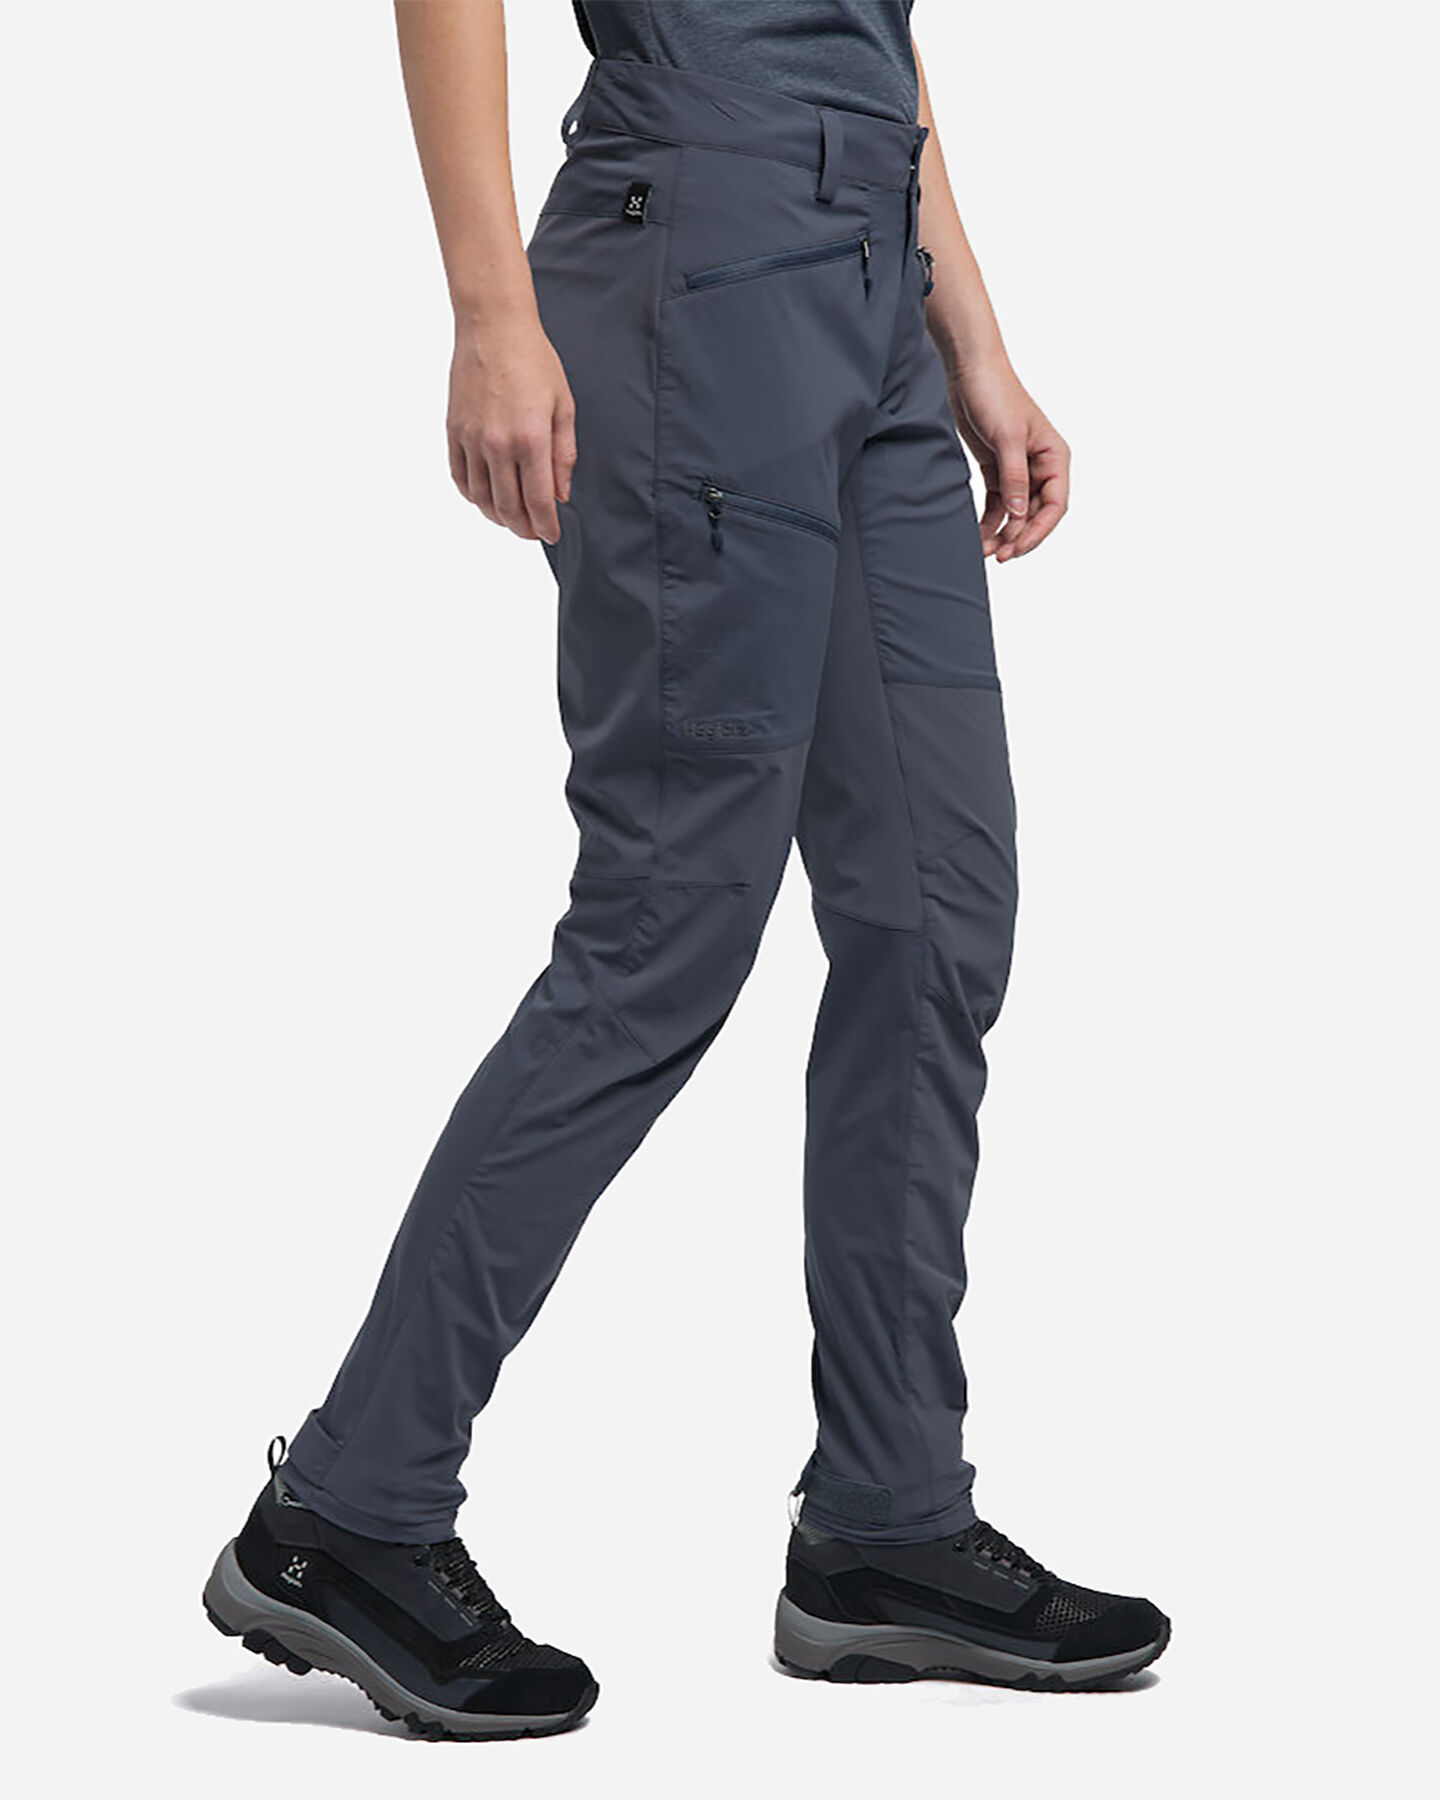  Pantalone outdoor HAGLOFS LITE FLEX Q W S4077127|1|36 scatto 3